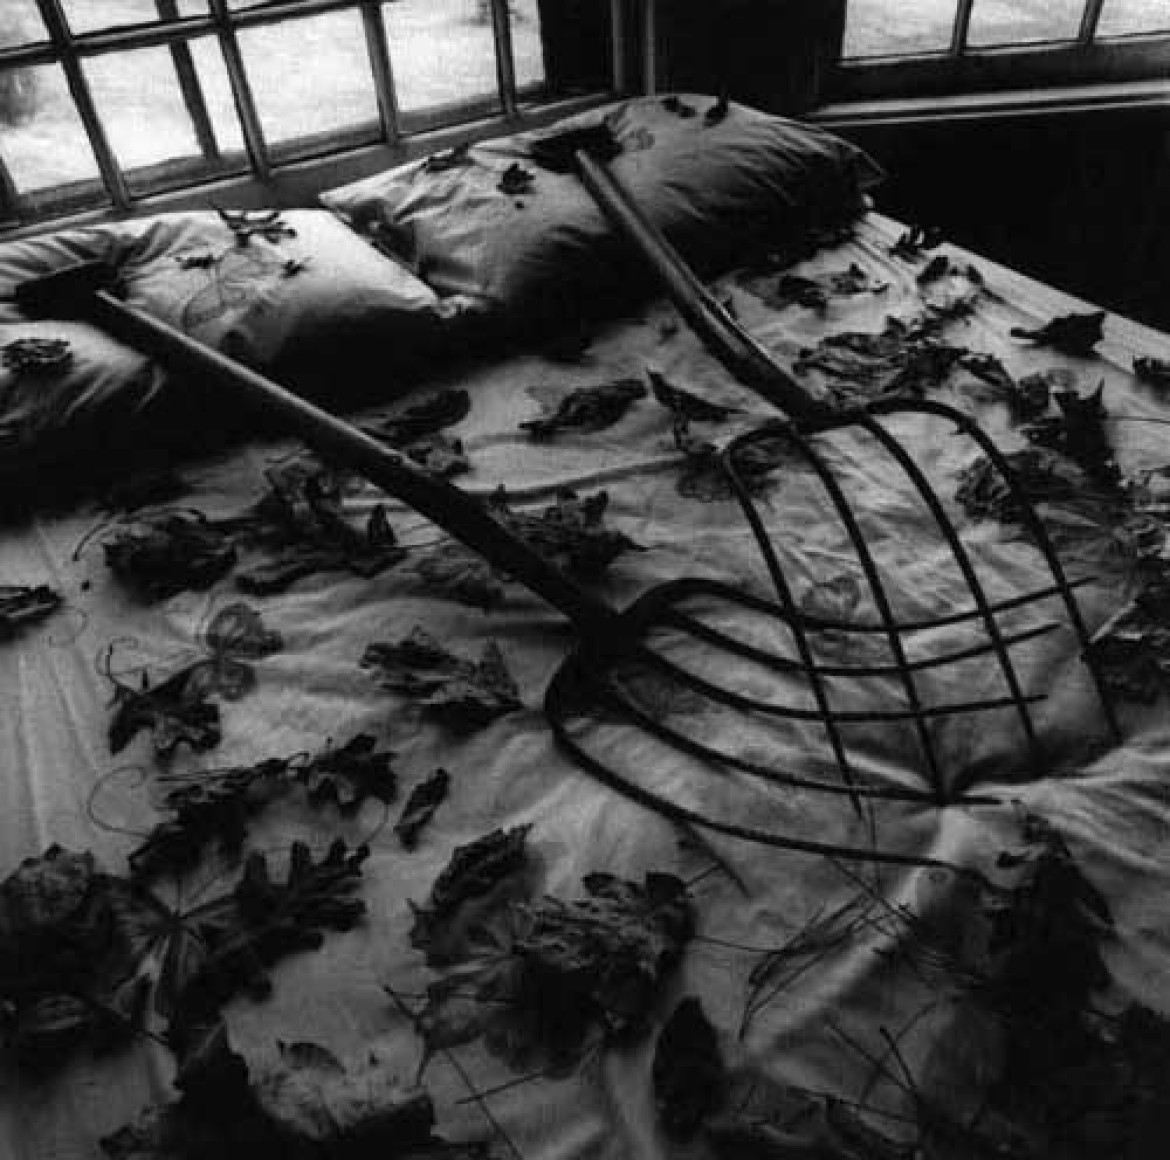 Fot. Arthur Tress, Making Leaves, NY 1978